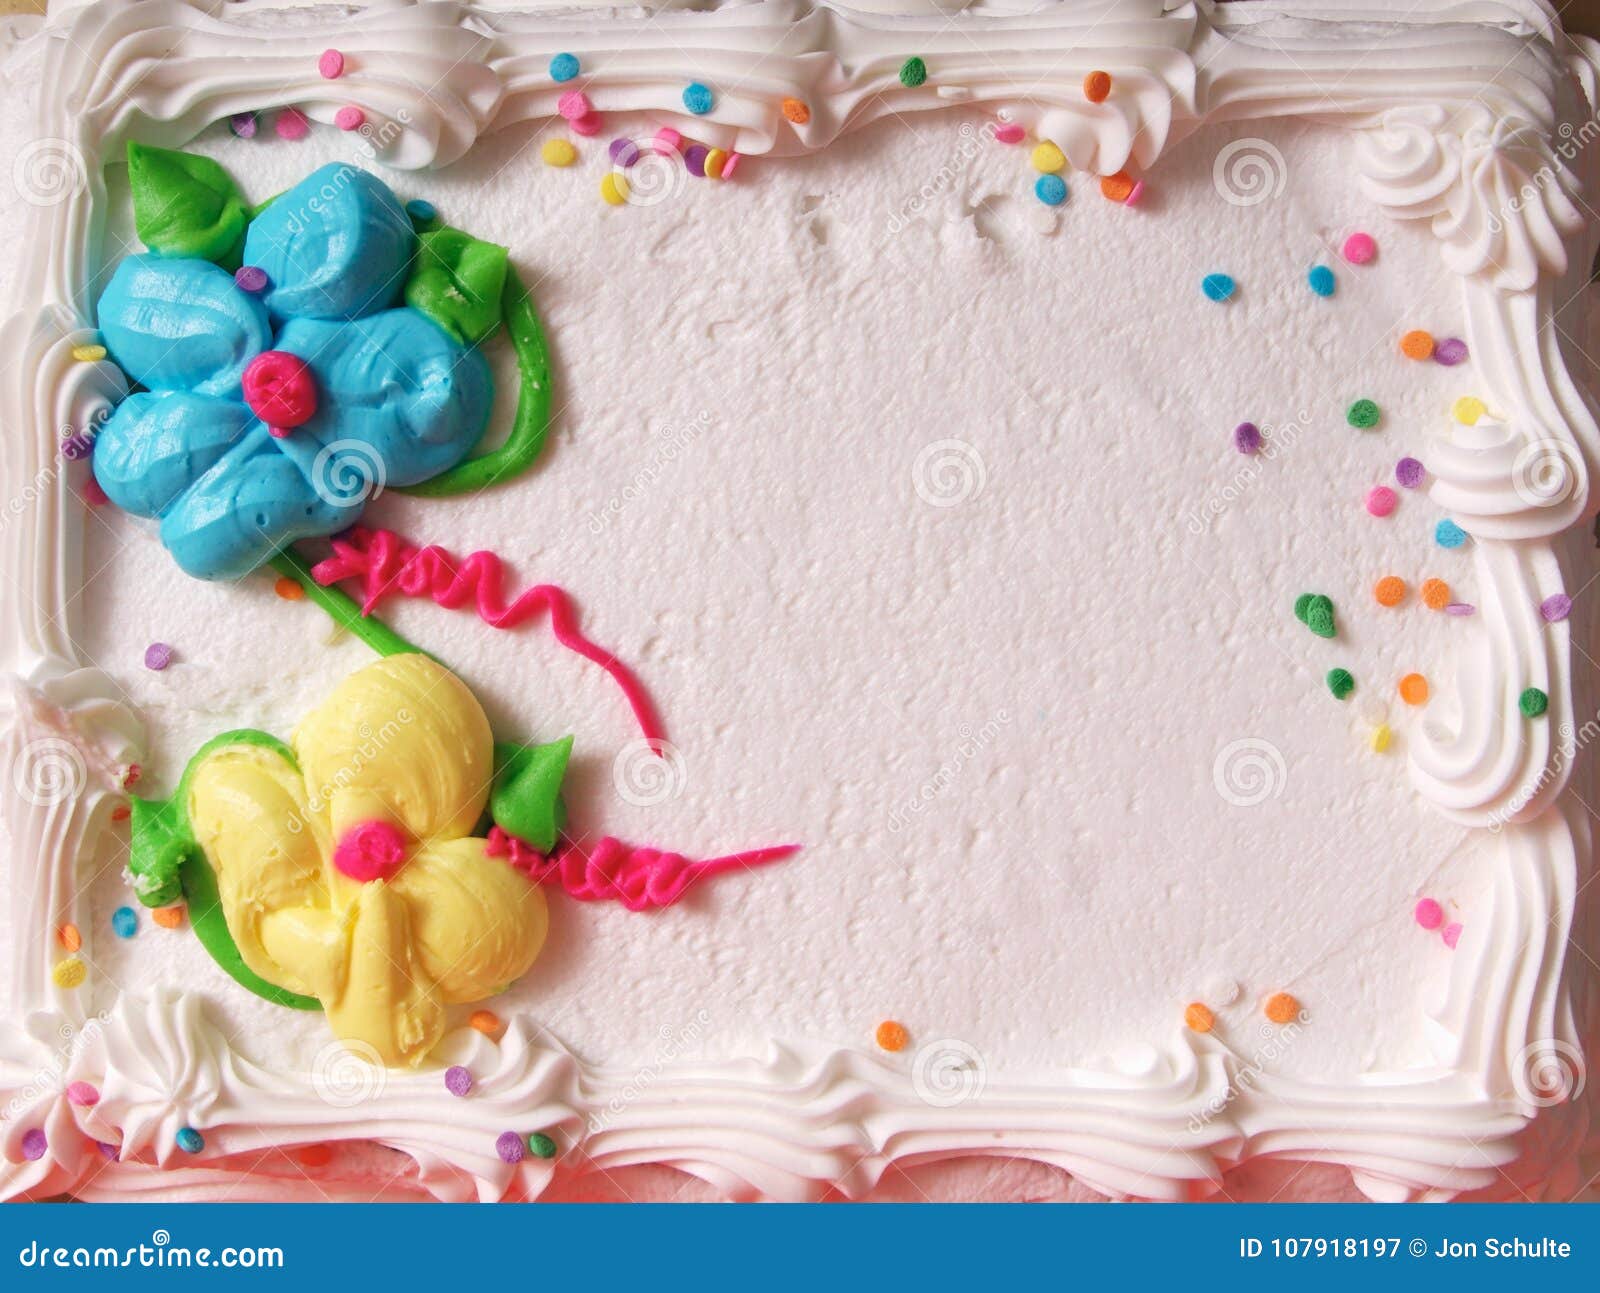 生日蛋糕的制作方法 在线教程 视频教程 - 课书房